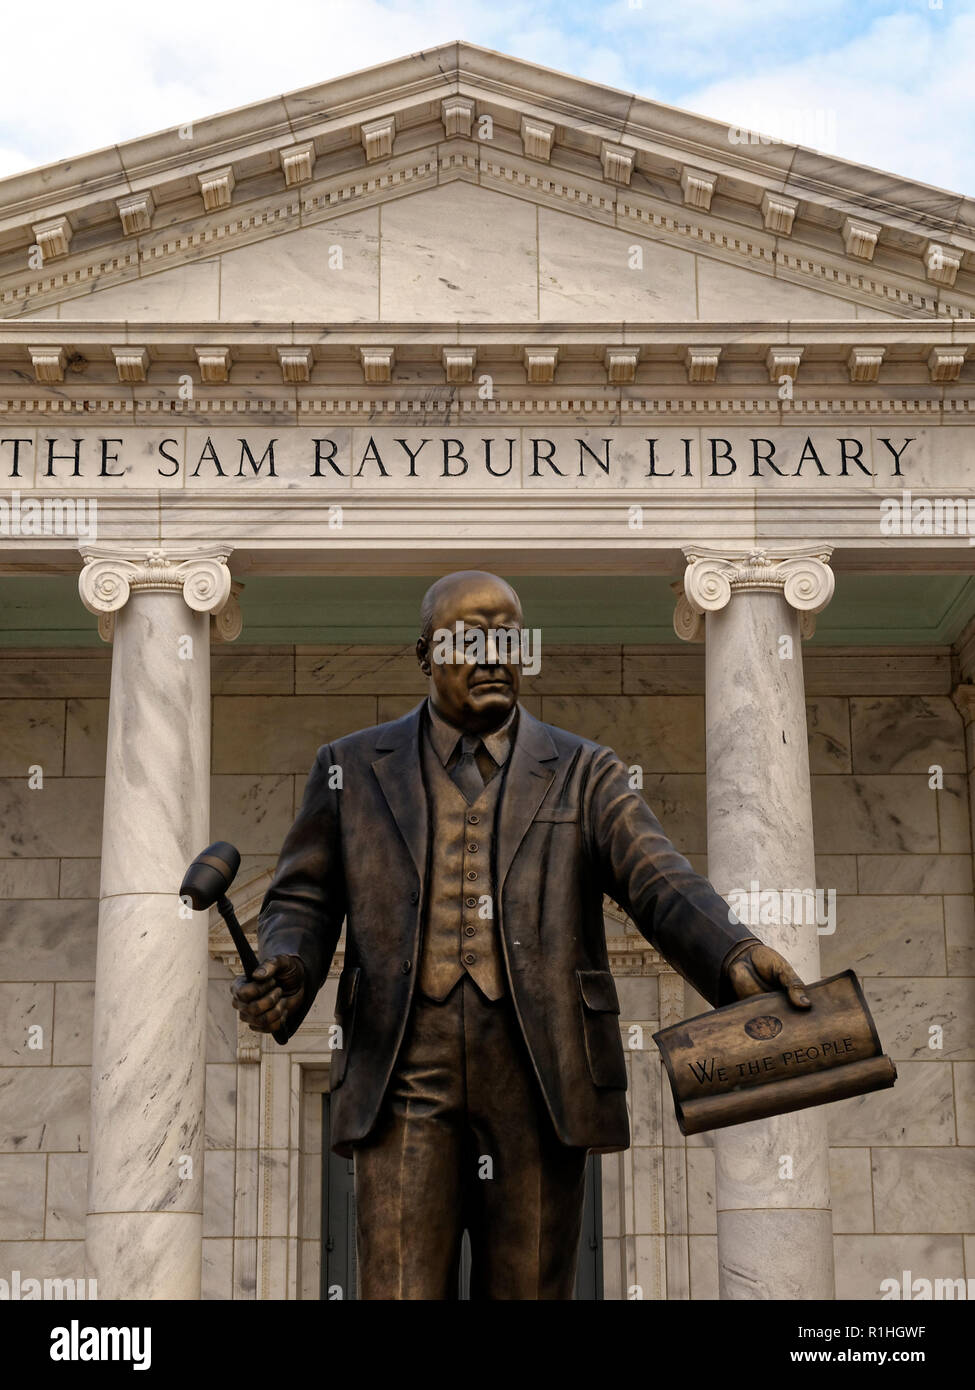 Una statua di altoparlante Sam Rayburn telai di fronte il suo memoriale in Bonham, Texas. Egli ha guidato il più importante legislazione nel XX secolo attraverso il Congresso. Foto Stock